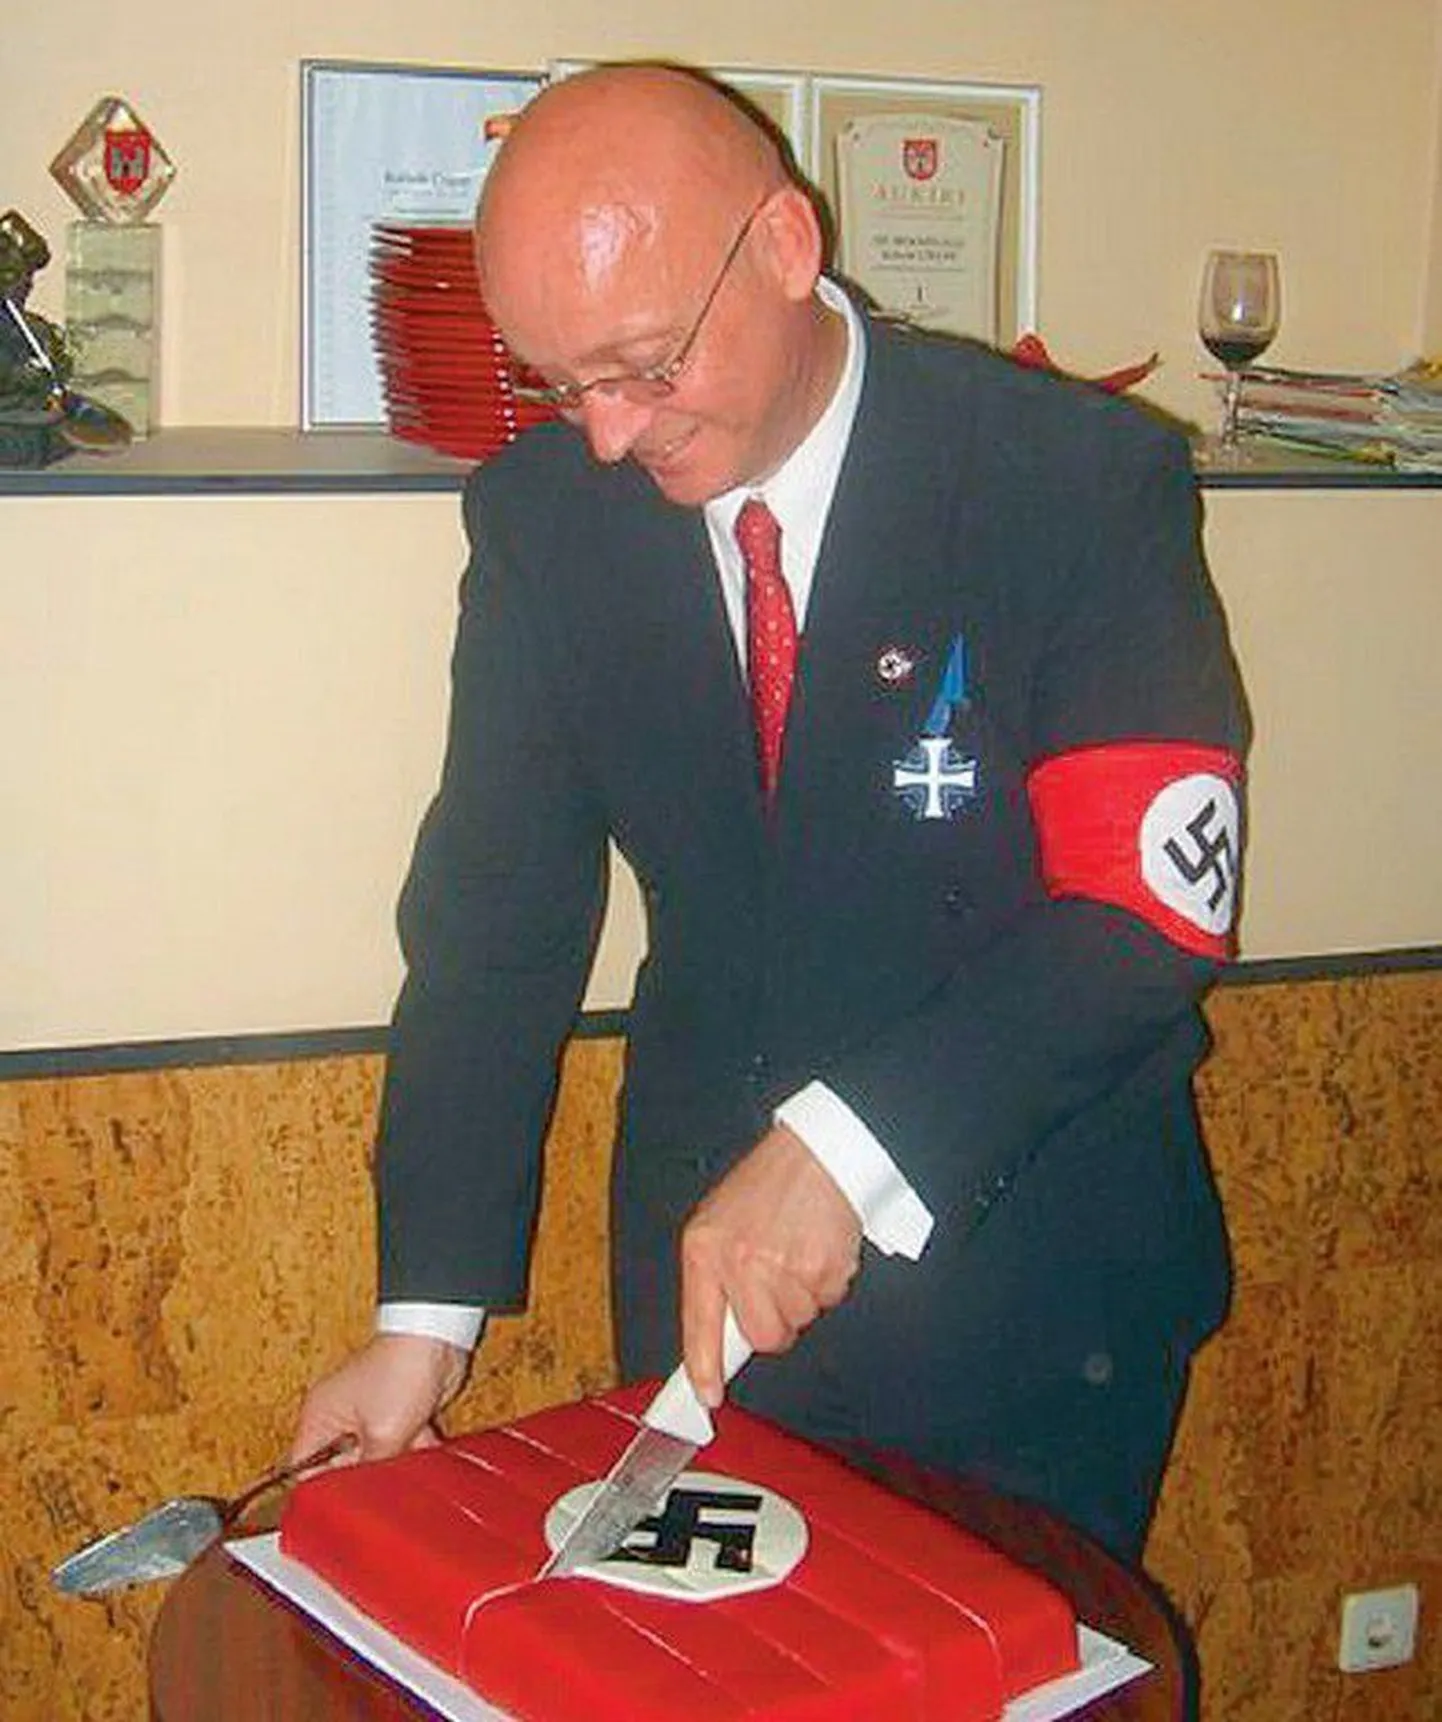 Полиция безопасности назвала Тейнонена пропагандистом Нацистской Германии.